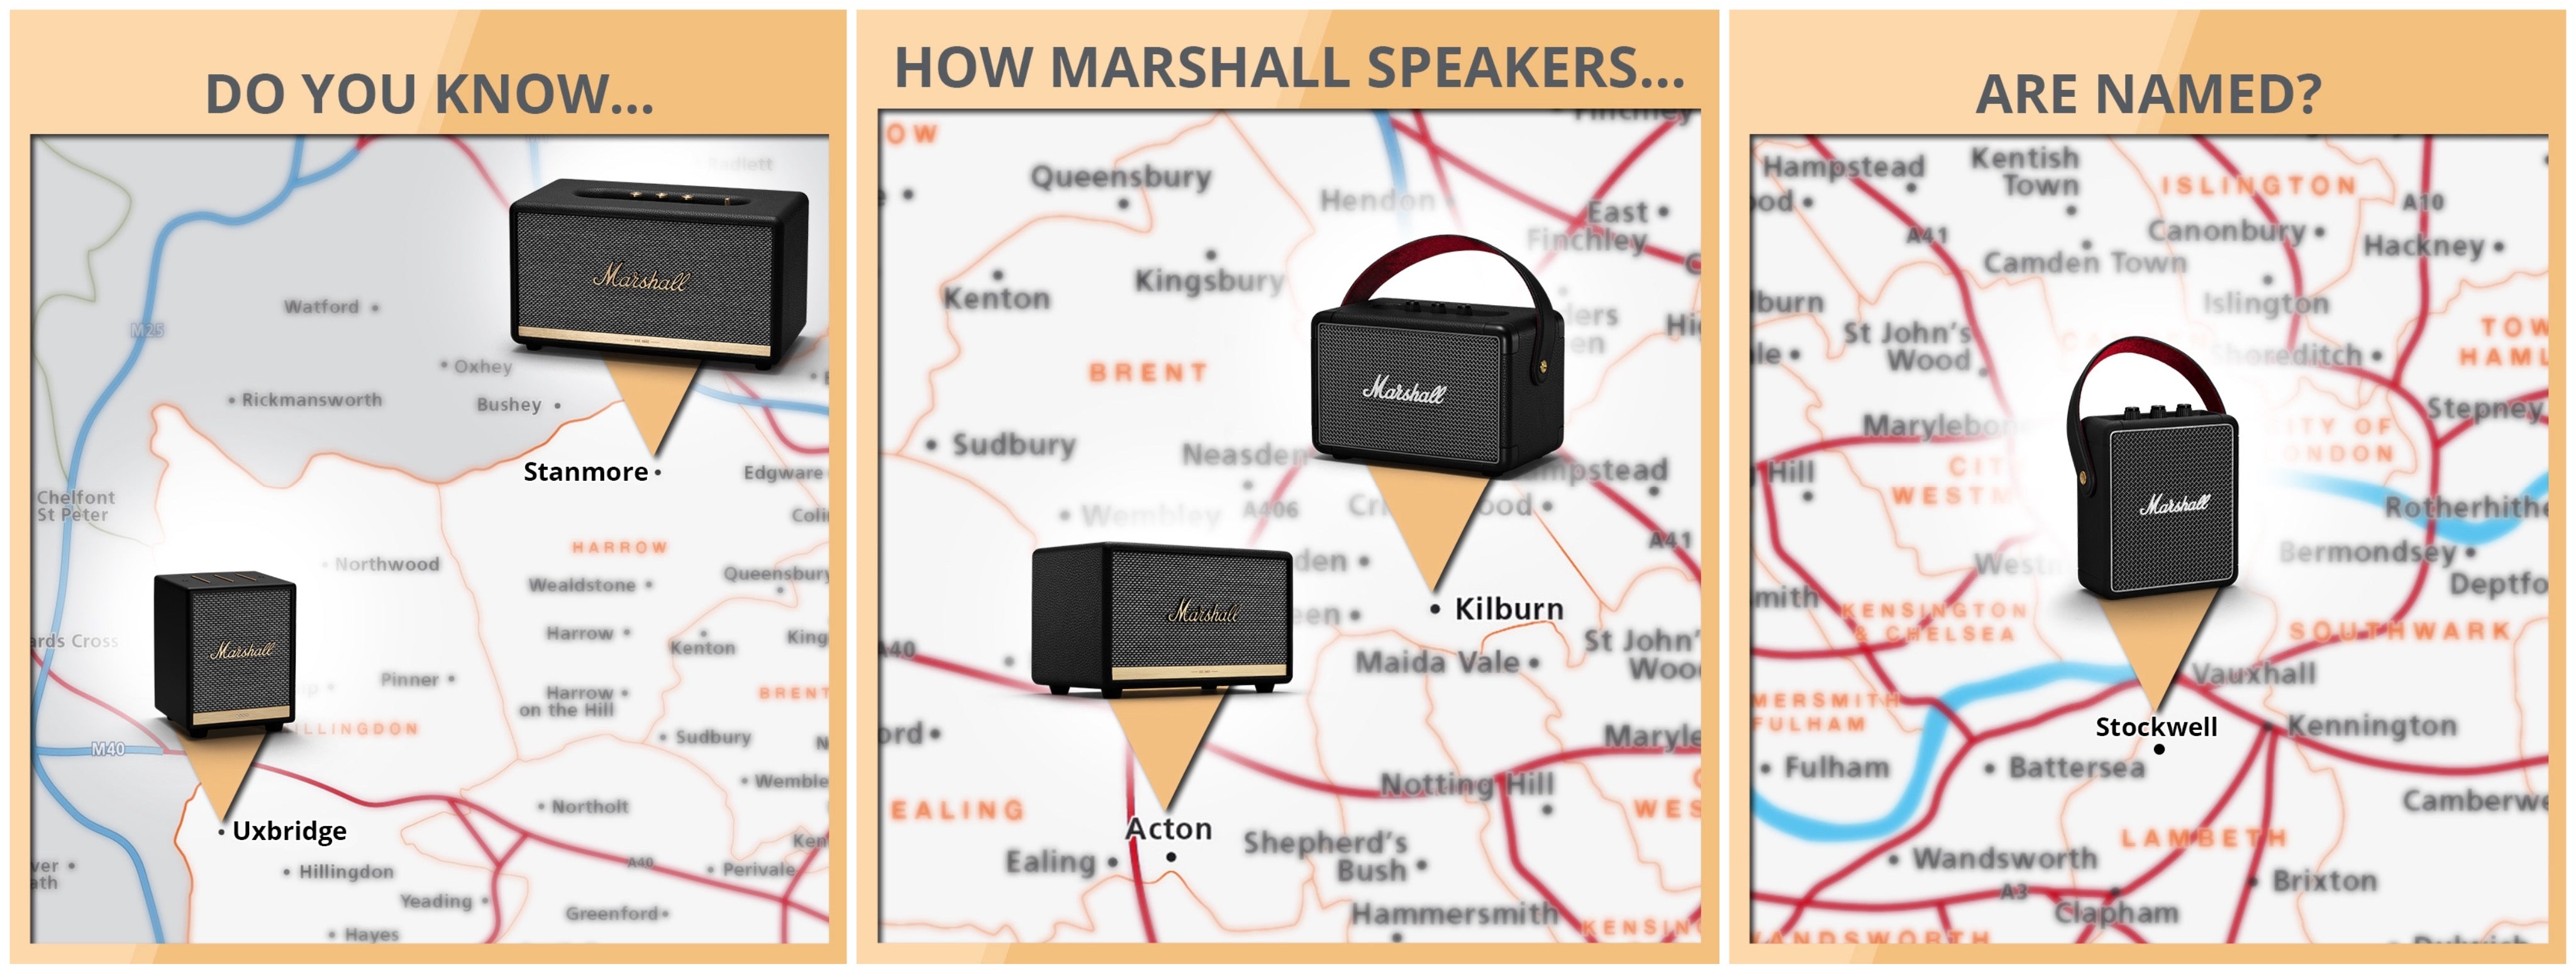 Marshall Speakers Map